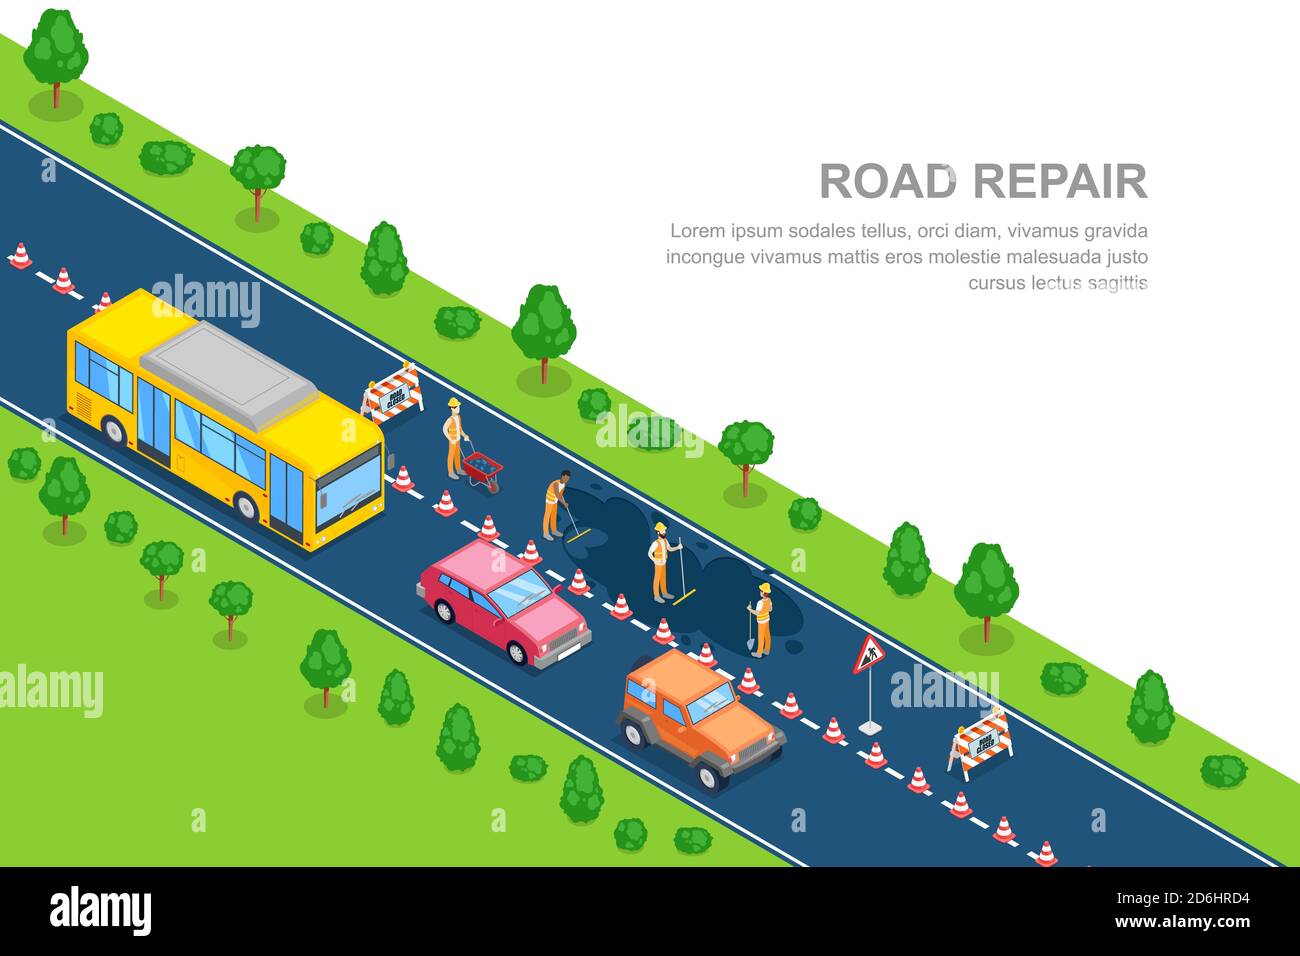 Road repair, roadworks and construction concept. Vector 3D